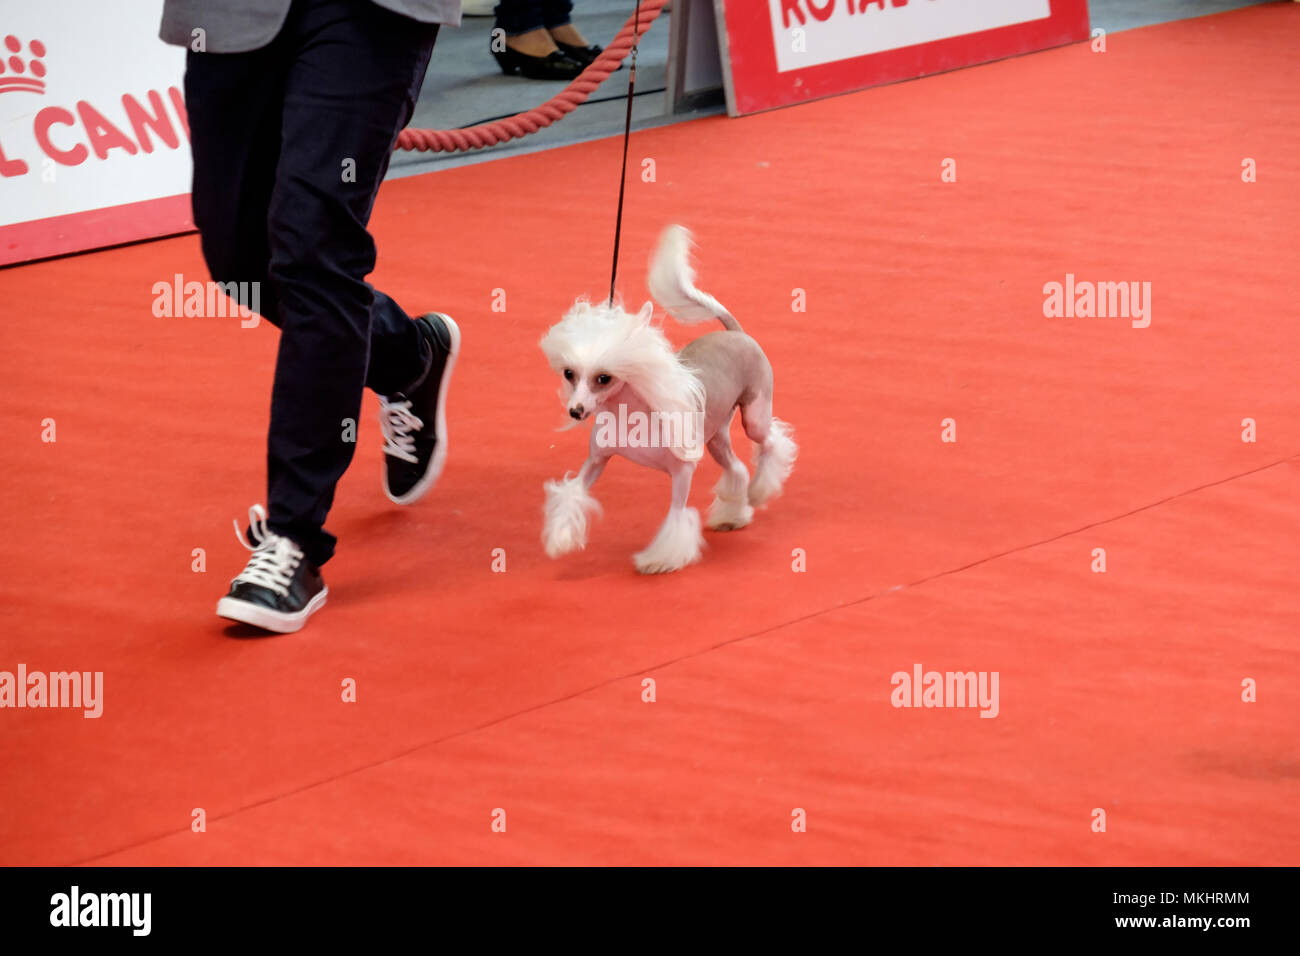 Personne montrant son Chien Chinois à Crête aux juges au cours d'une compétition canine Banque D'Images